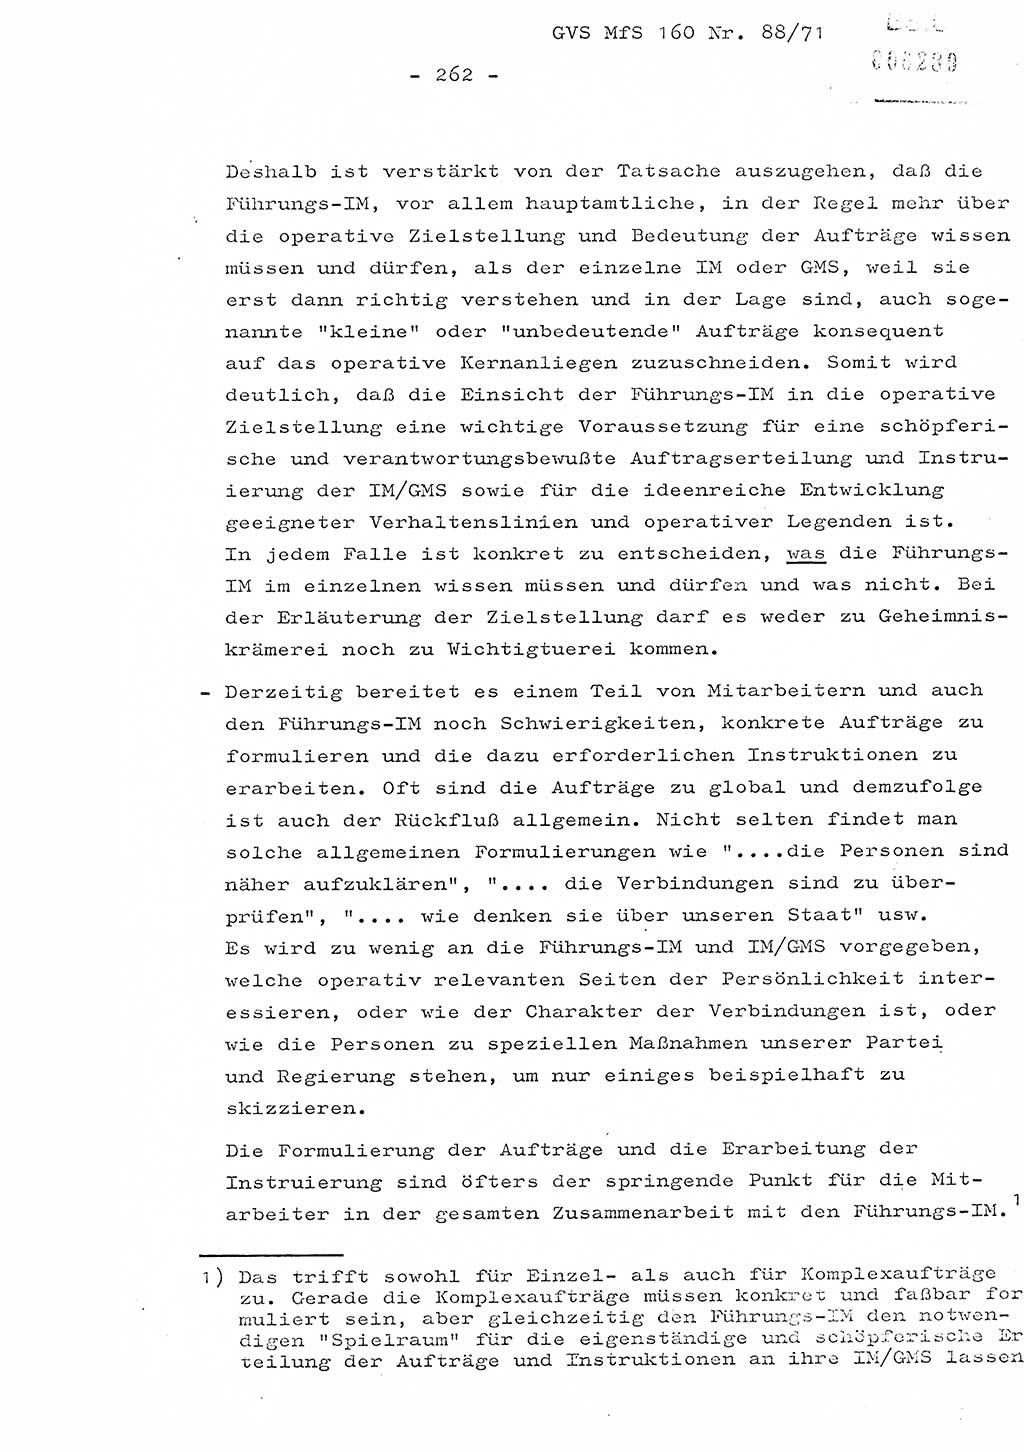 Dissertation Oberstleutnant Josef Schwarz (BV Schwerin), Major Fritz Amm (JHS), Hauptmann Peter Gräßler (JHS), Ministerium für Staatssicherheit (MfS) [Deutsche Demokratische Republik (DDR)], Juristische Hochschule (JHS), Geheime Verschlußsache (GVS) 160-88/71, Potsdam 1972, Seite 262 (Diss. MfS DDR JHS GVS 160-88/71 1972, S. 262)